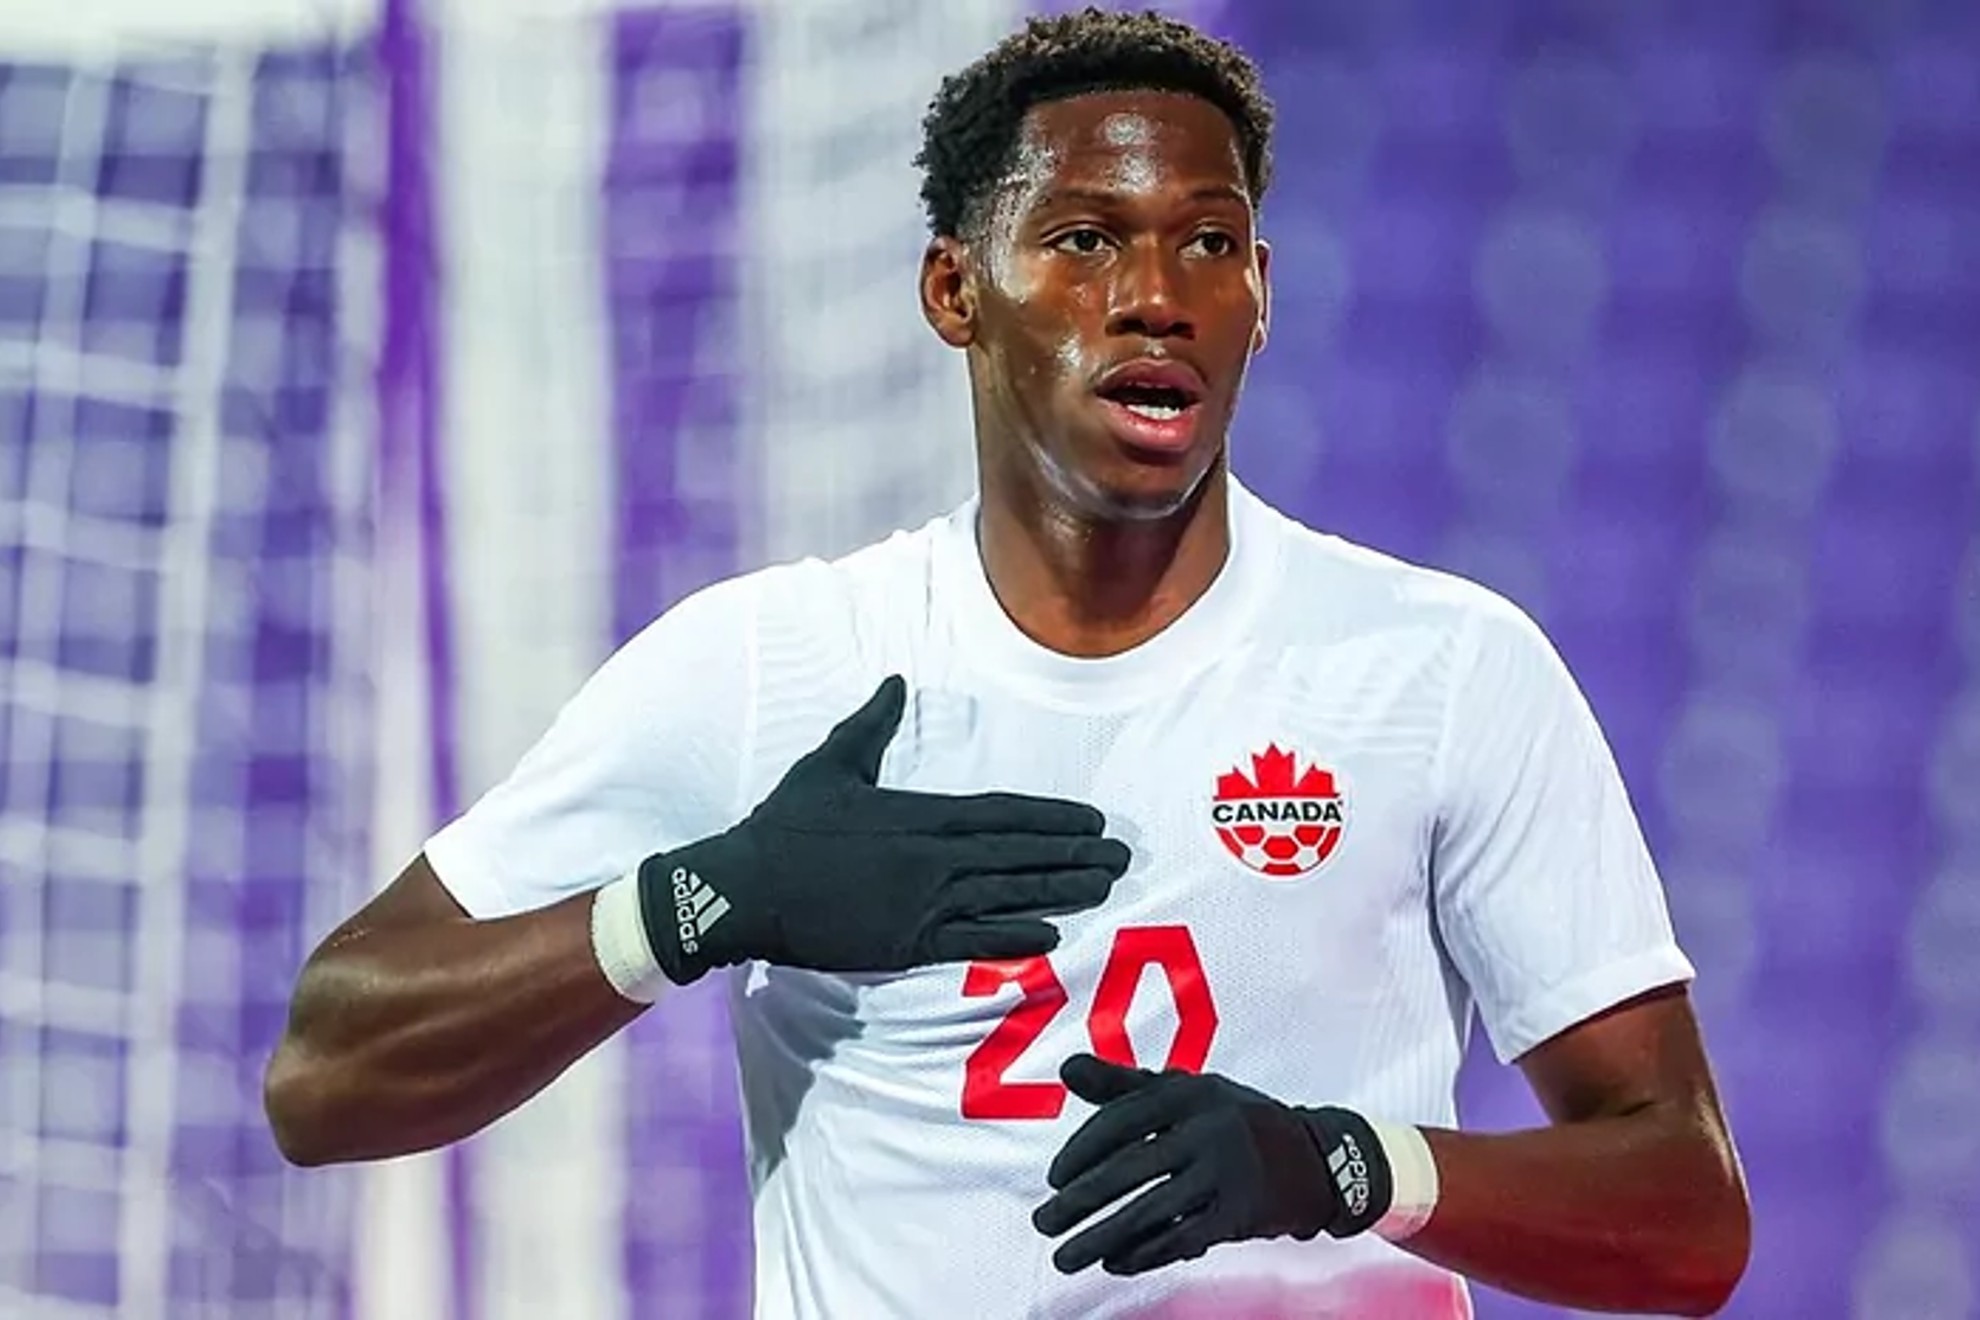 ¿Por qué un jugador de Canadá celebró un gol cubriendo el logo de Nike en su uniforme?